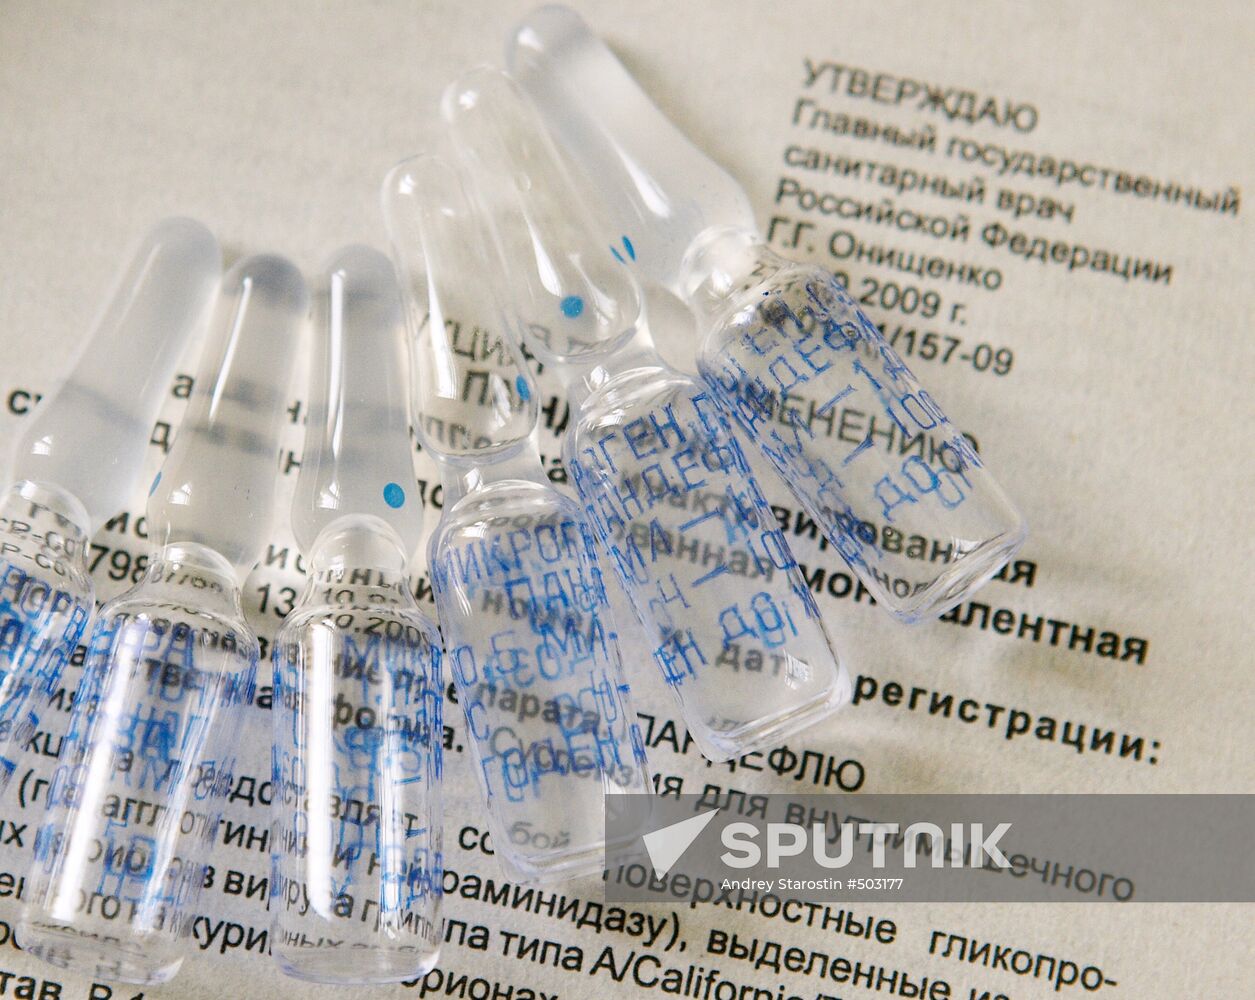 Pandeflu, an A/H1N1 flu vaccine